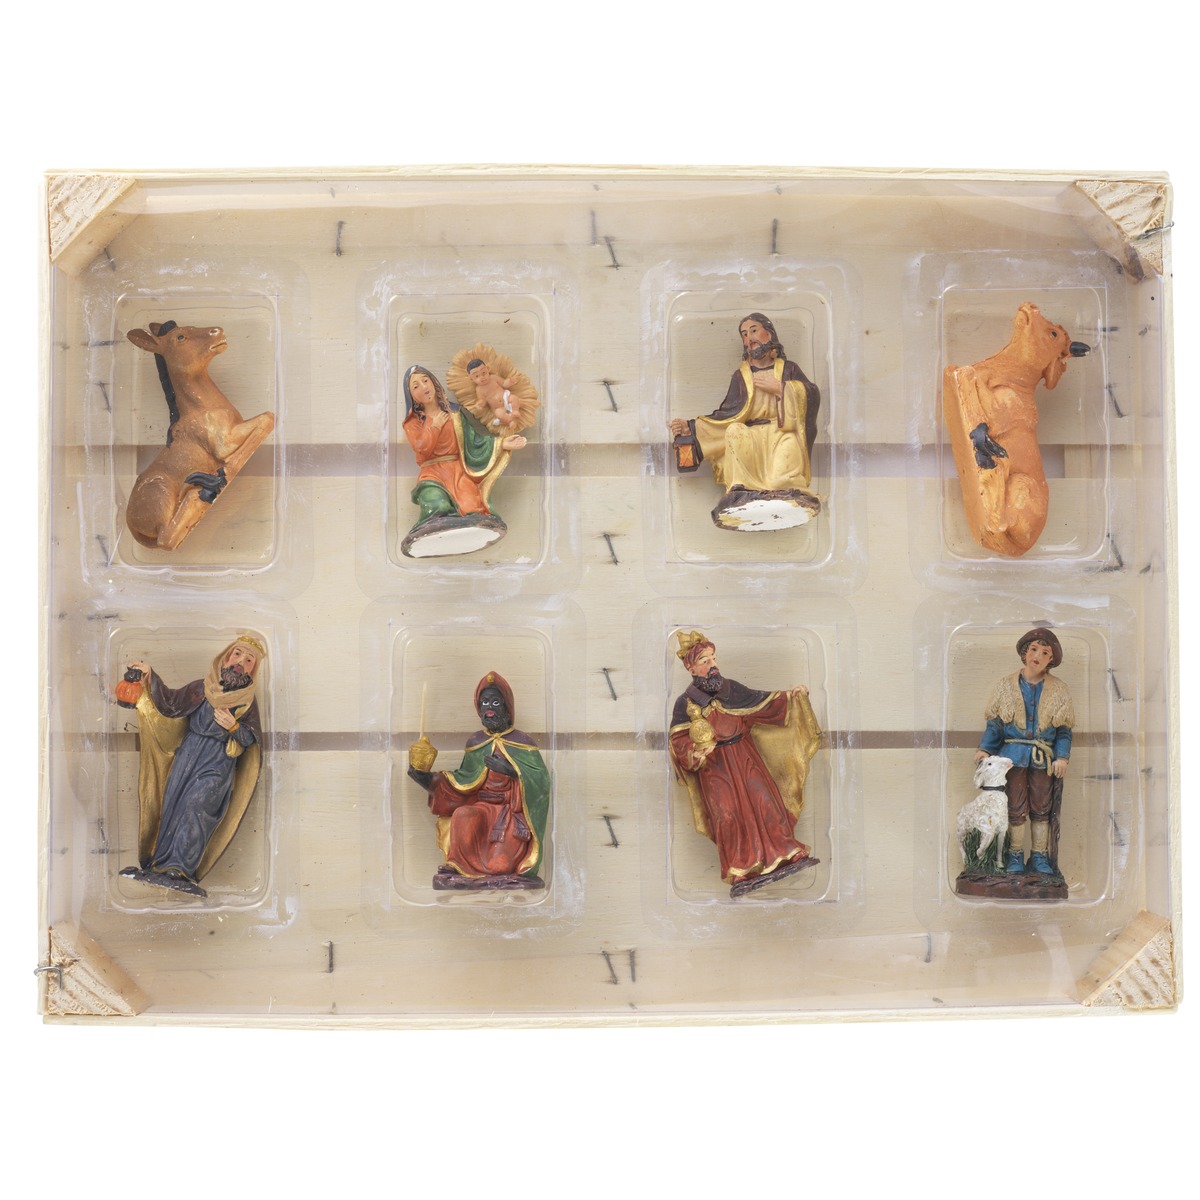 Cagette de 9 santons - Longueur 10 cm - Multicolore